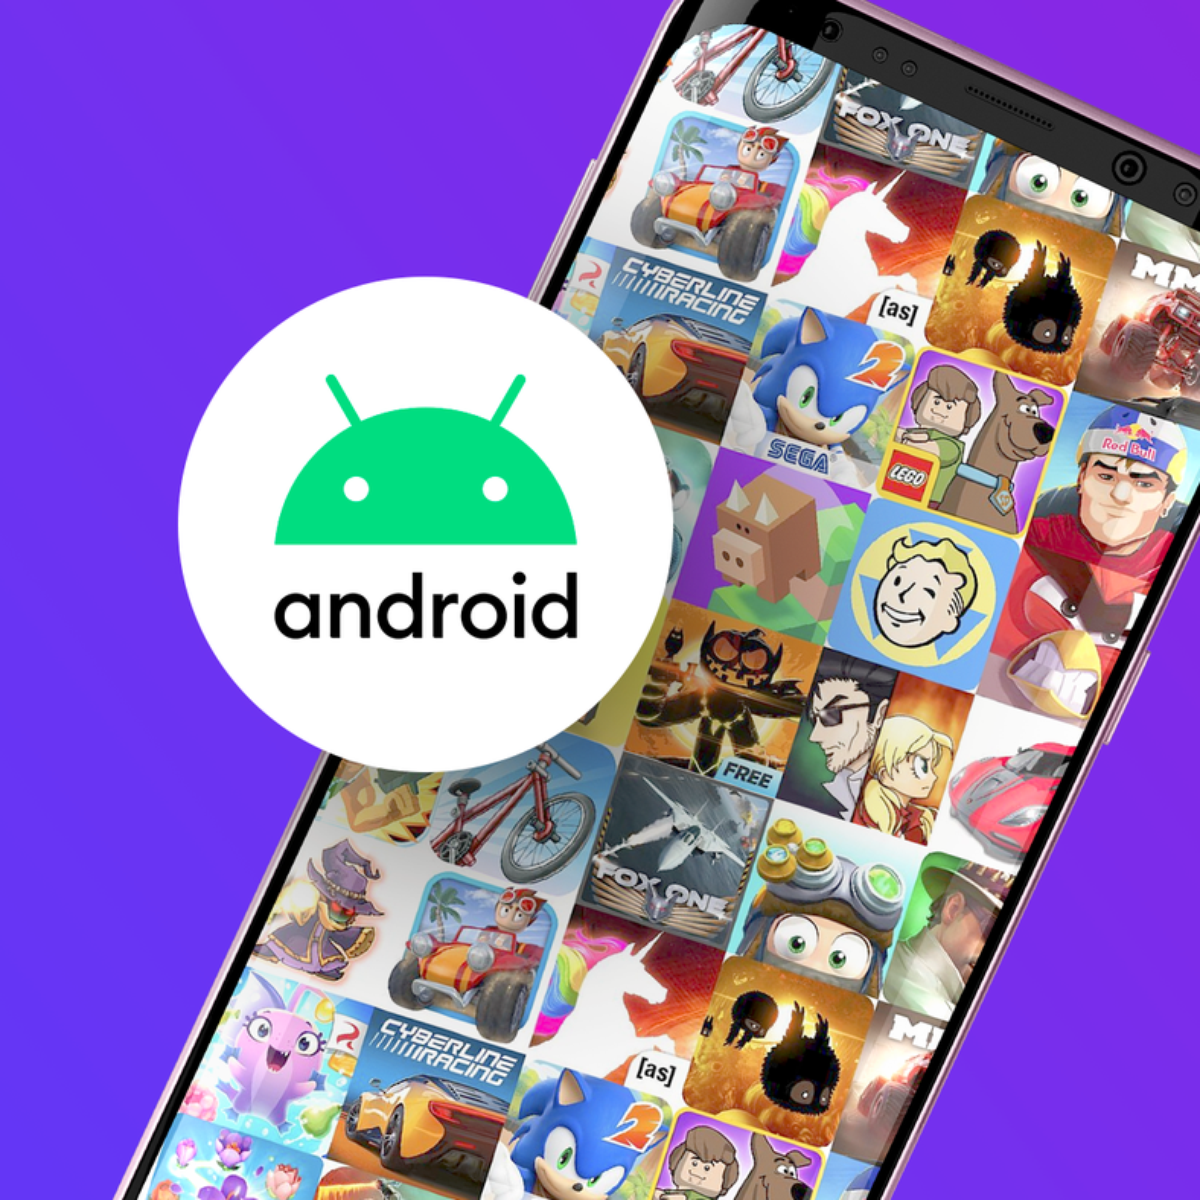 Google Play Store: Os 17 jogos grátis Android mais populares do momento -  4gnews